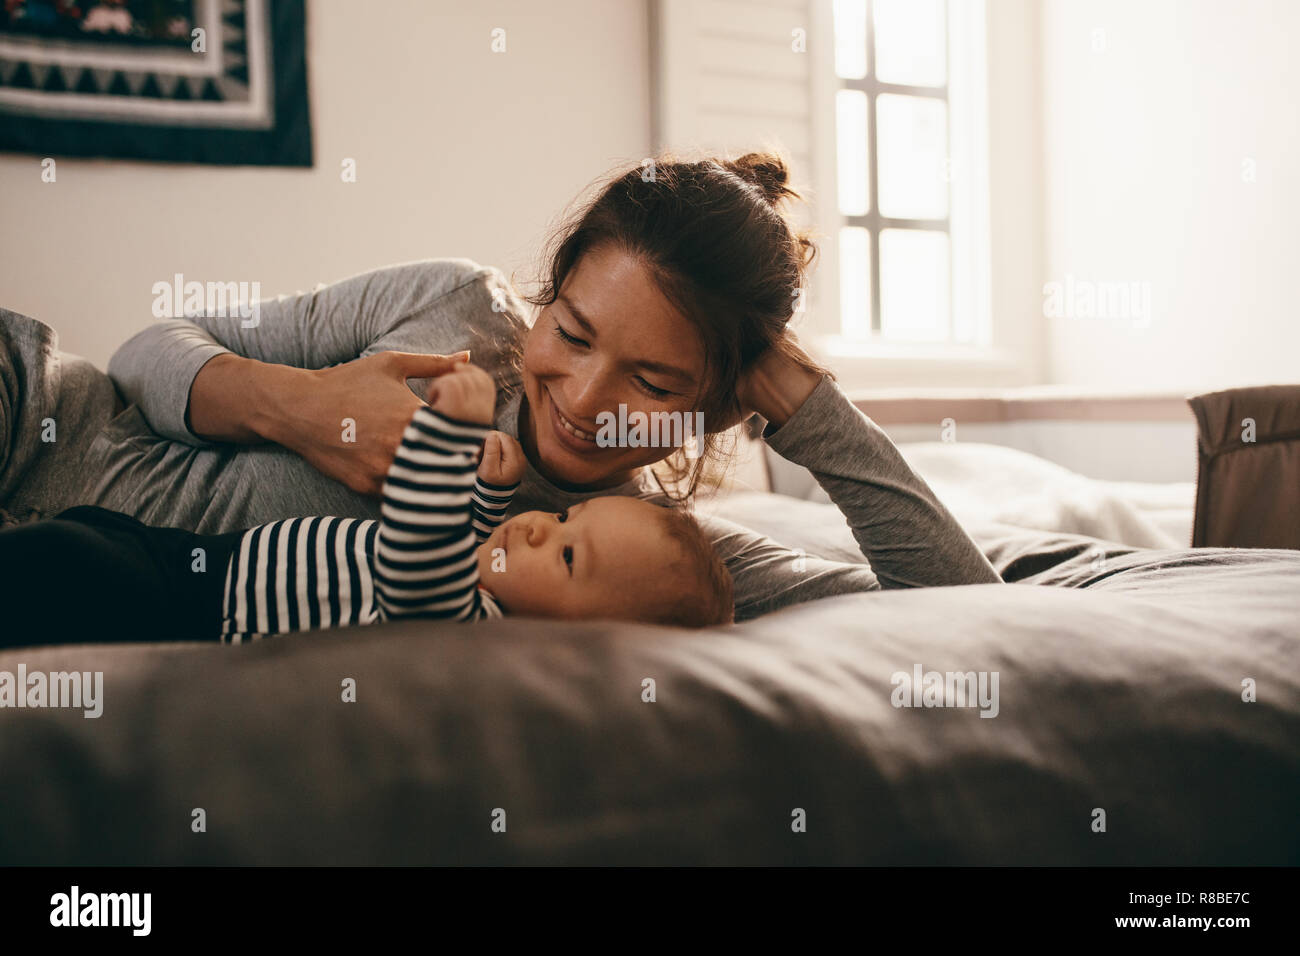 Frau liegend auf Bett verwöhnen ihr Baby. Lächelnde Mutter spielt mit ihrem Kind Baby liegend auf Bett zu Hause. Stockfoto